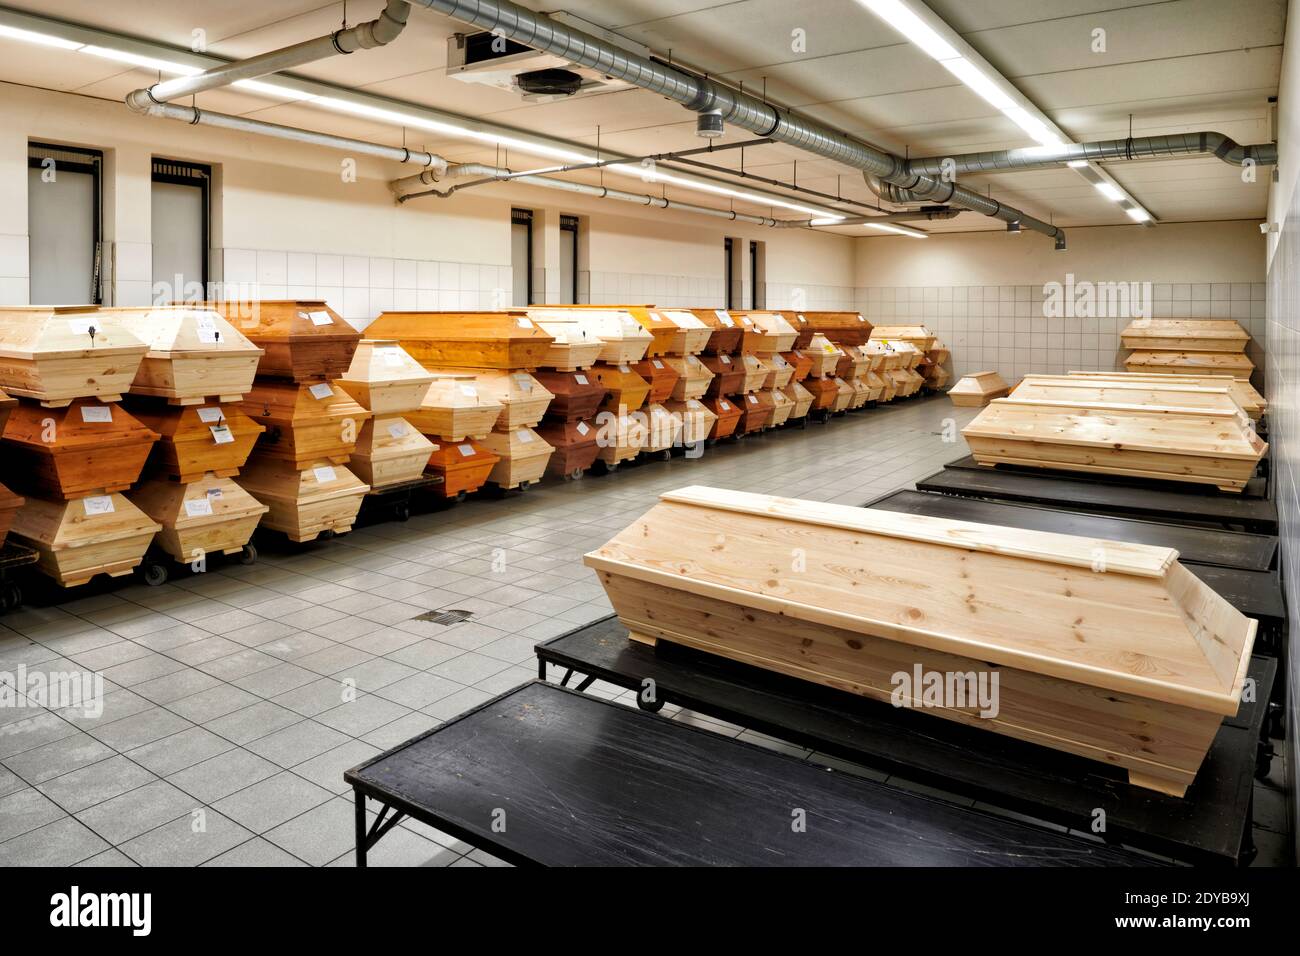 In einem kuehlen Raum eines Krematoriums stapeln sich Saerge mit Toten die noch eingeaeschert werden sollen. Die Sargreihen verlaufen an den Waenden e Banque D'Images